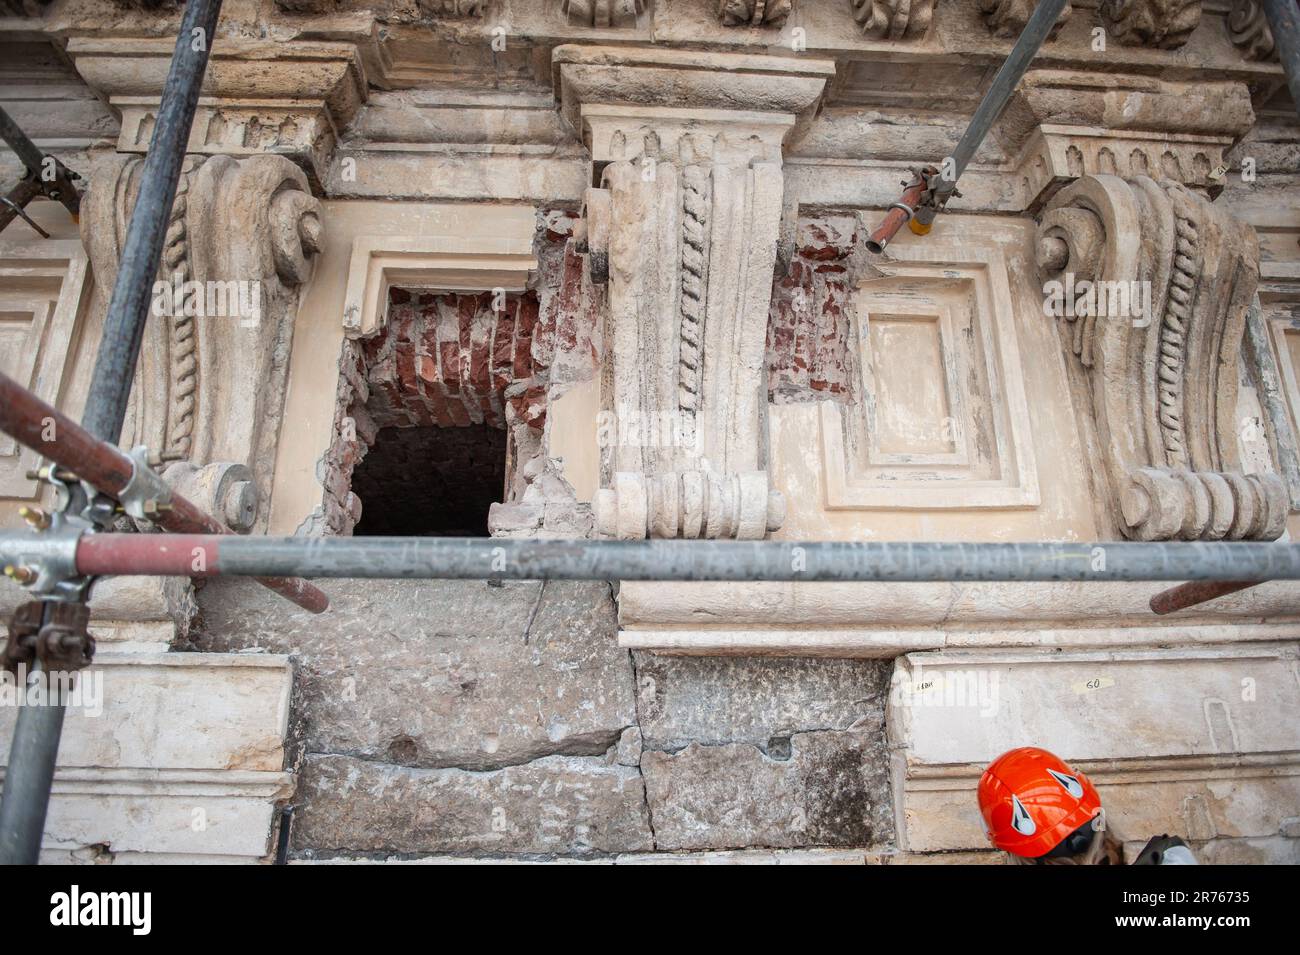 Un particolare dei lavori di restauro della facciata barocca di Palazzo Madama a Torino: Un foro nel quale verrà introdotta una struttura in acciaio Foto Stock